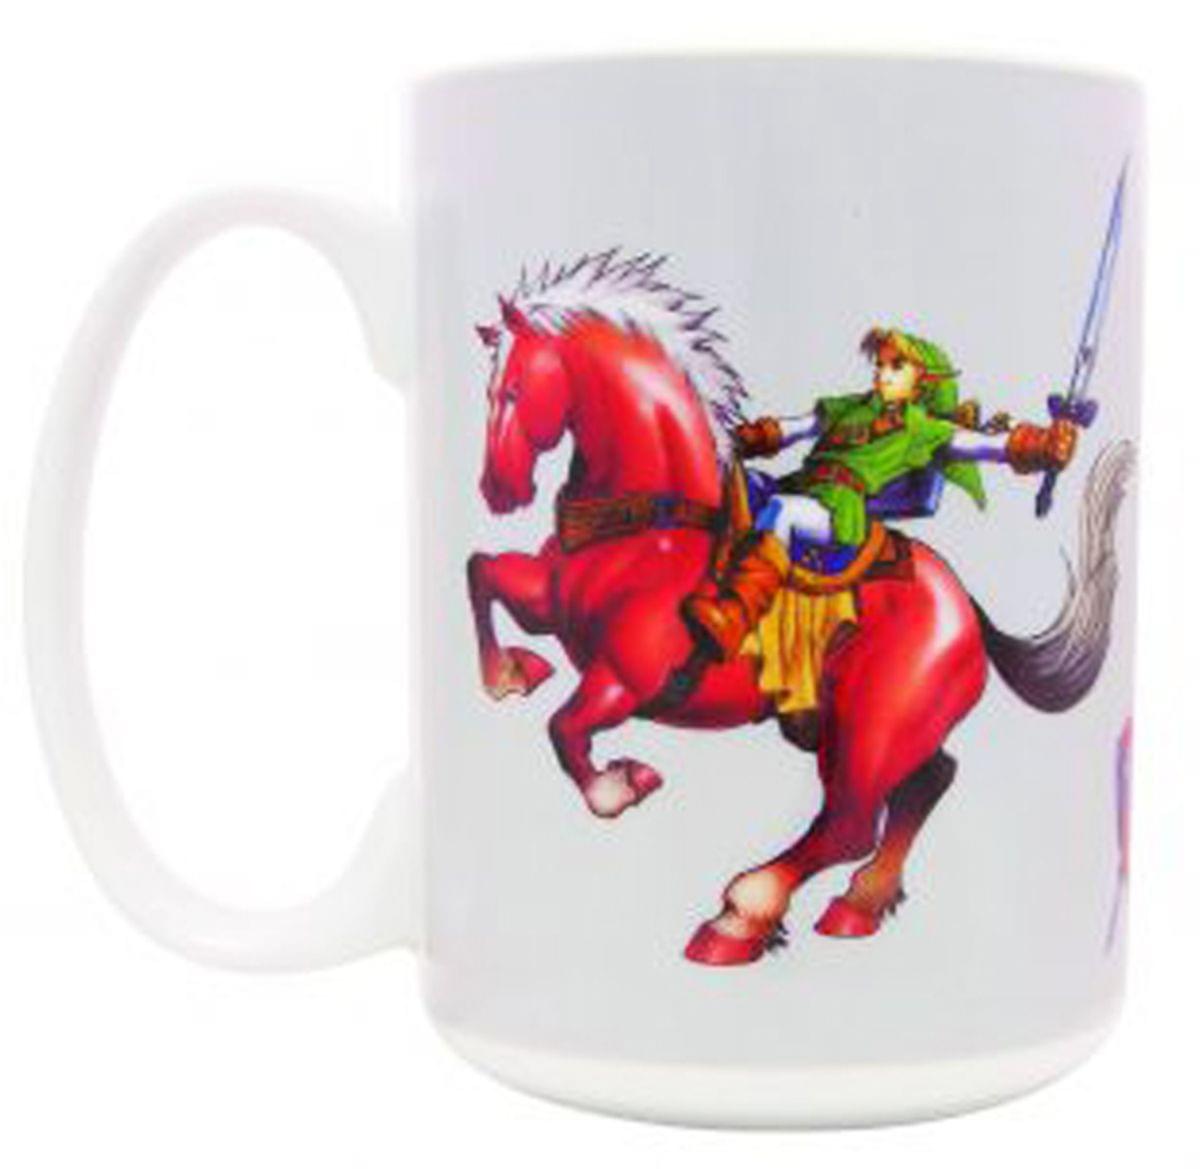 Legend of Zelda Ocarina of Time: Link on Epona Mug